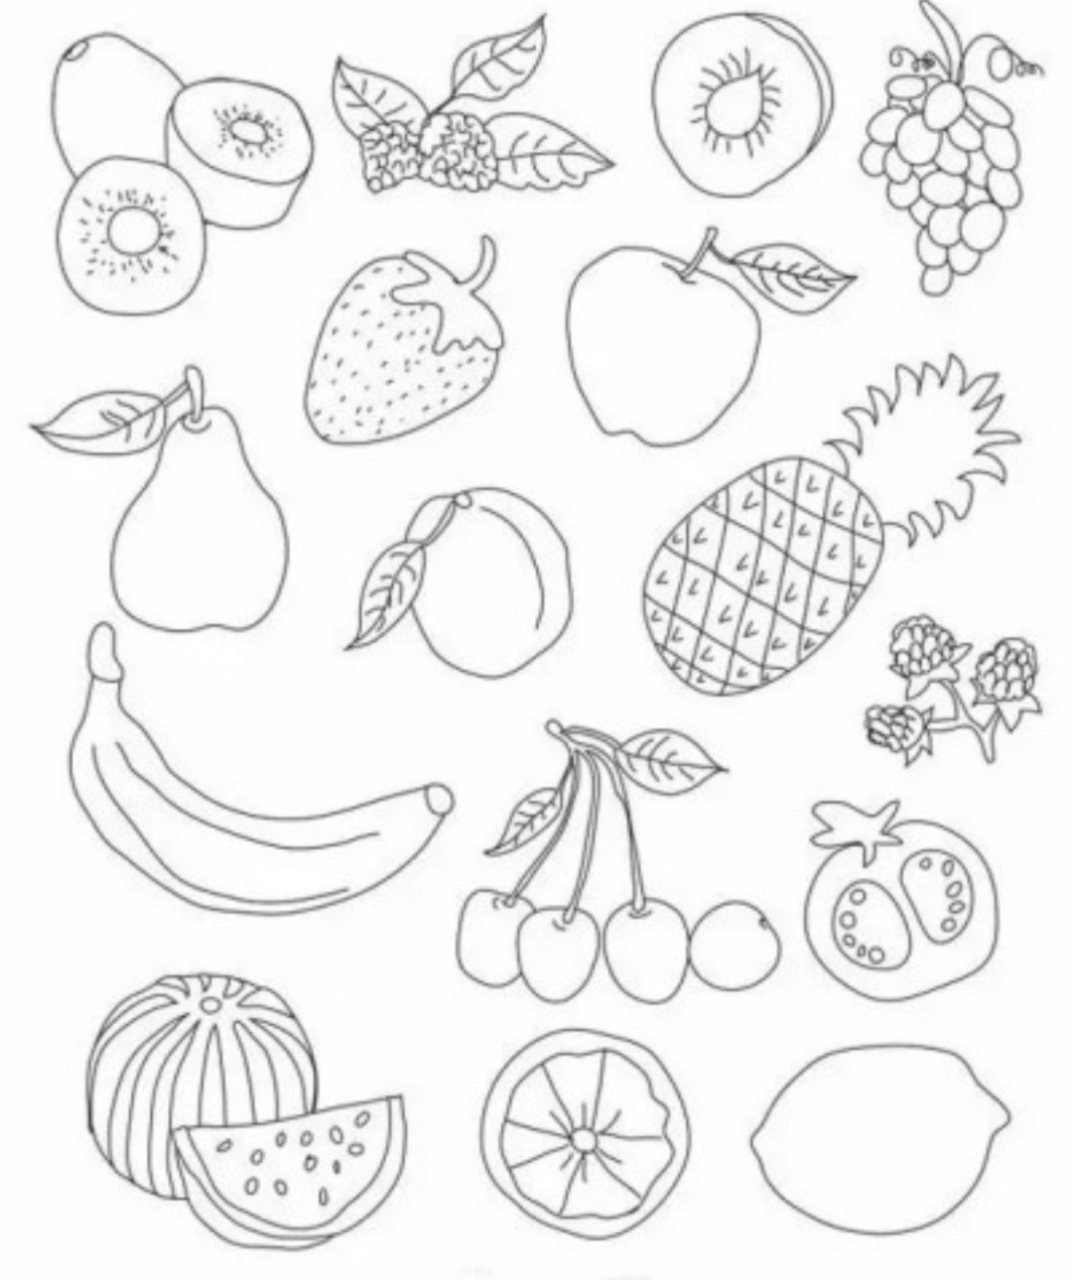 水果组合简笔画图片